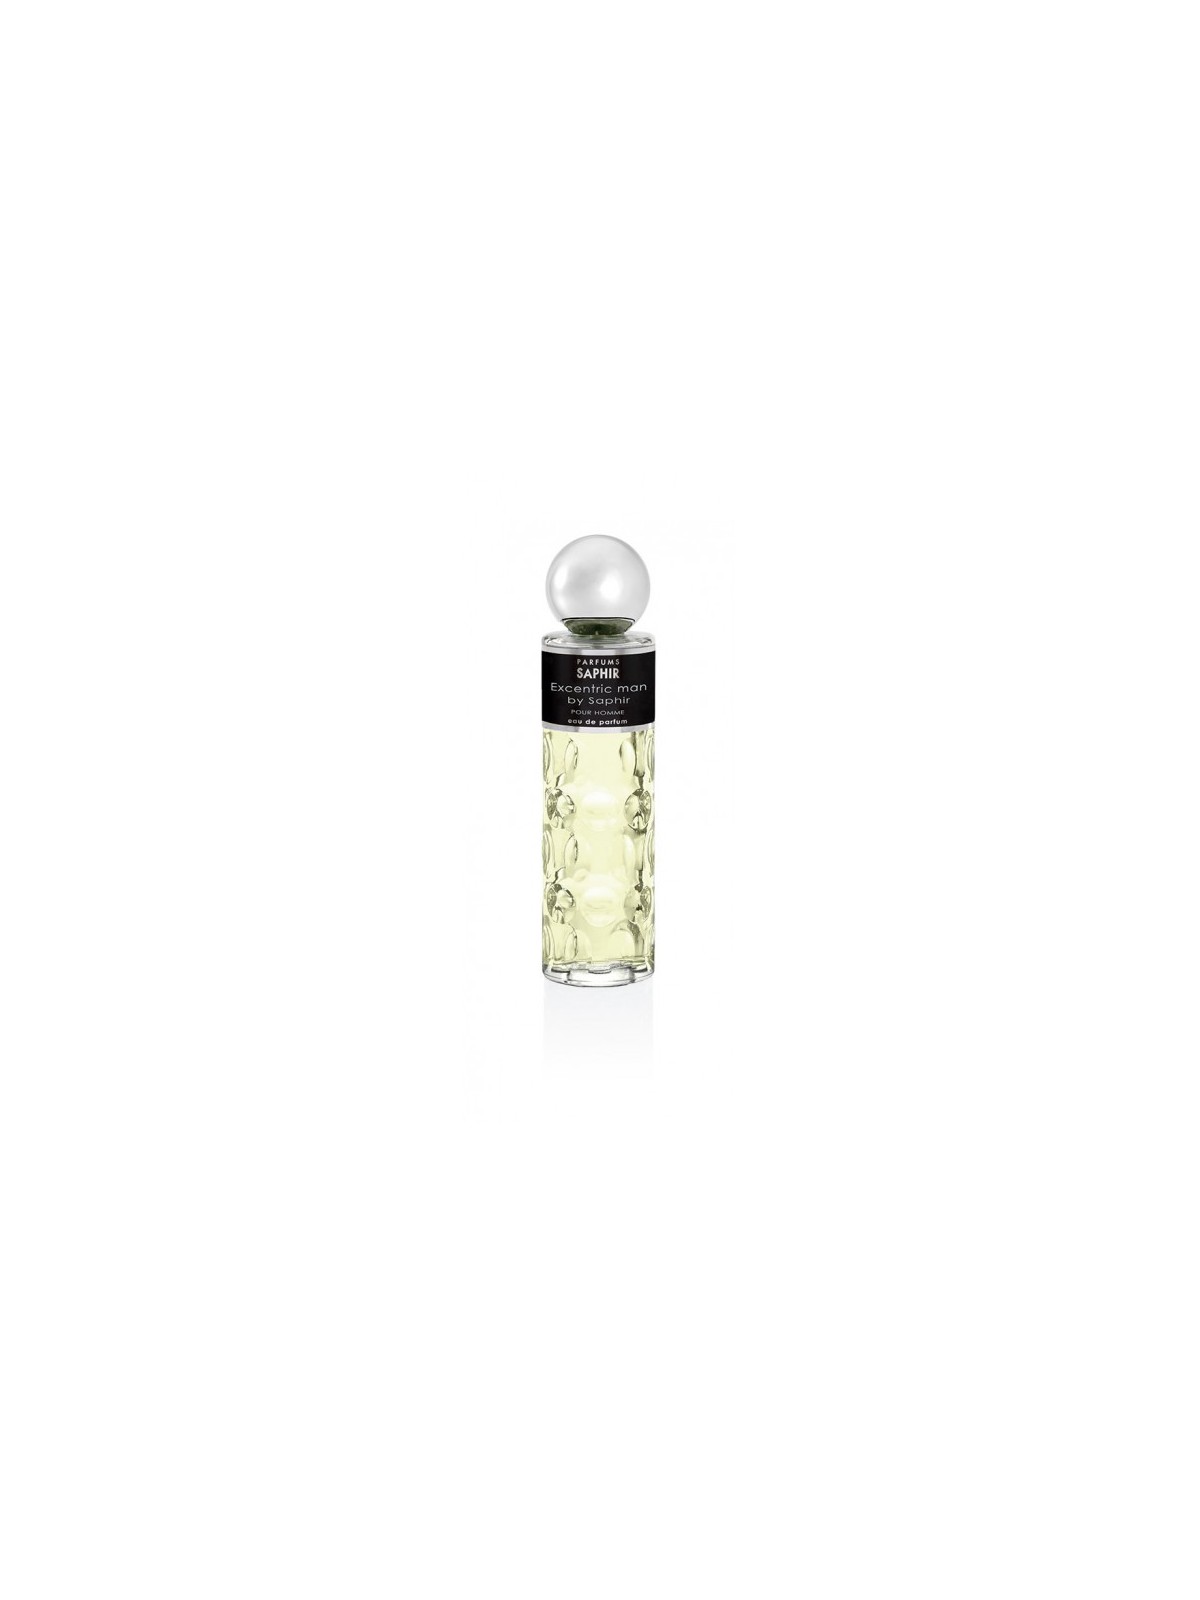 Comprar Perfume Saphir Excentric Man 200ML. en Perfumes para hombre por sólo 13,90 € o un precio específico de 13,90 € en Thalie Care